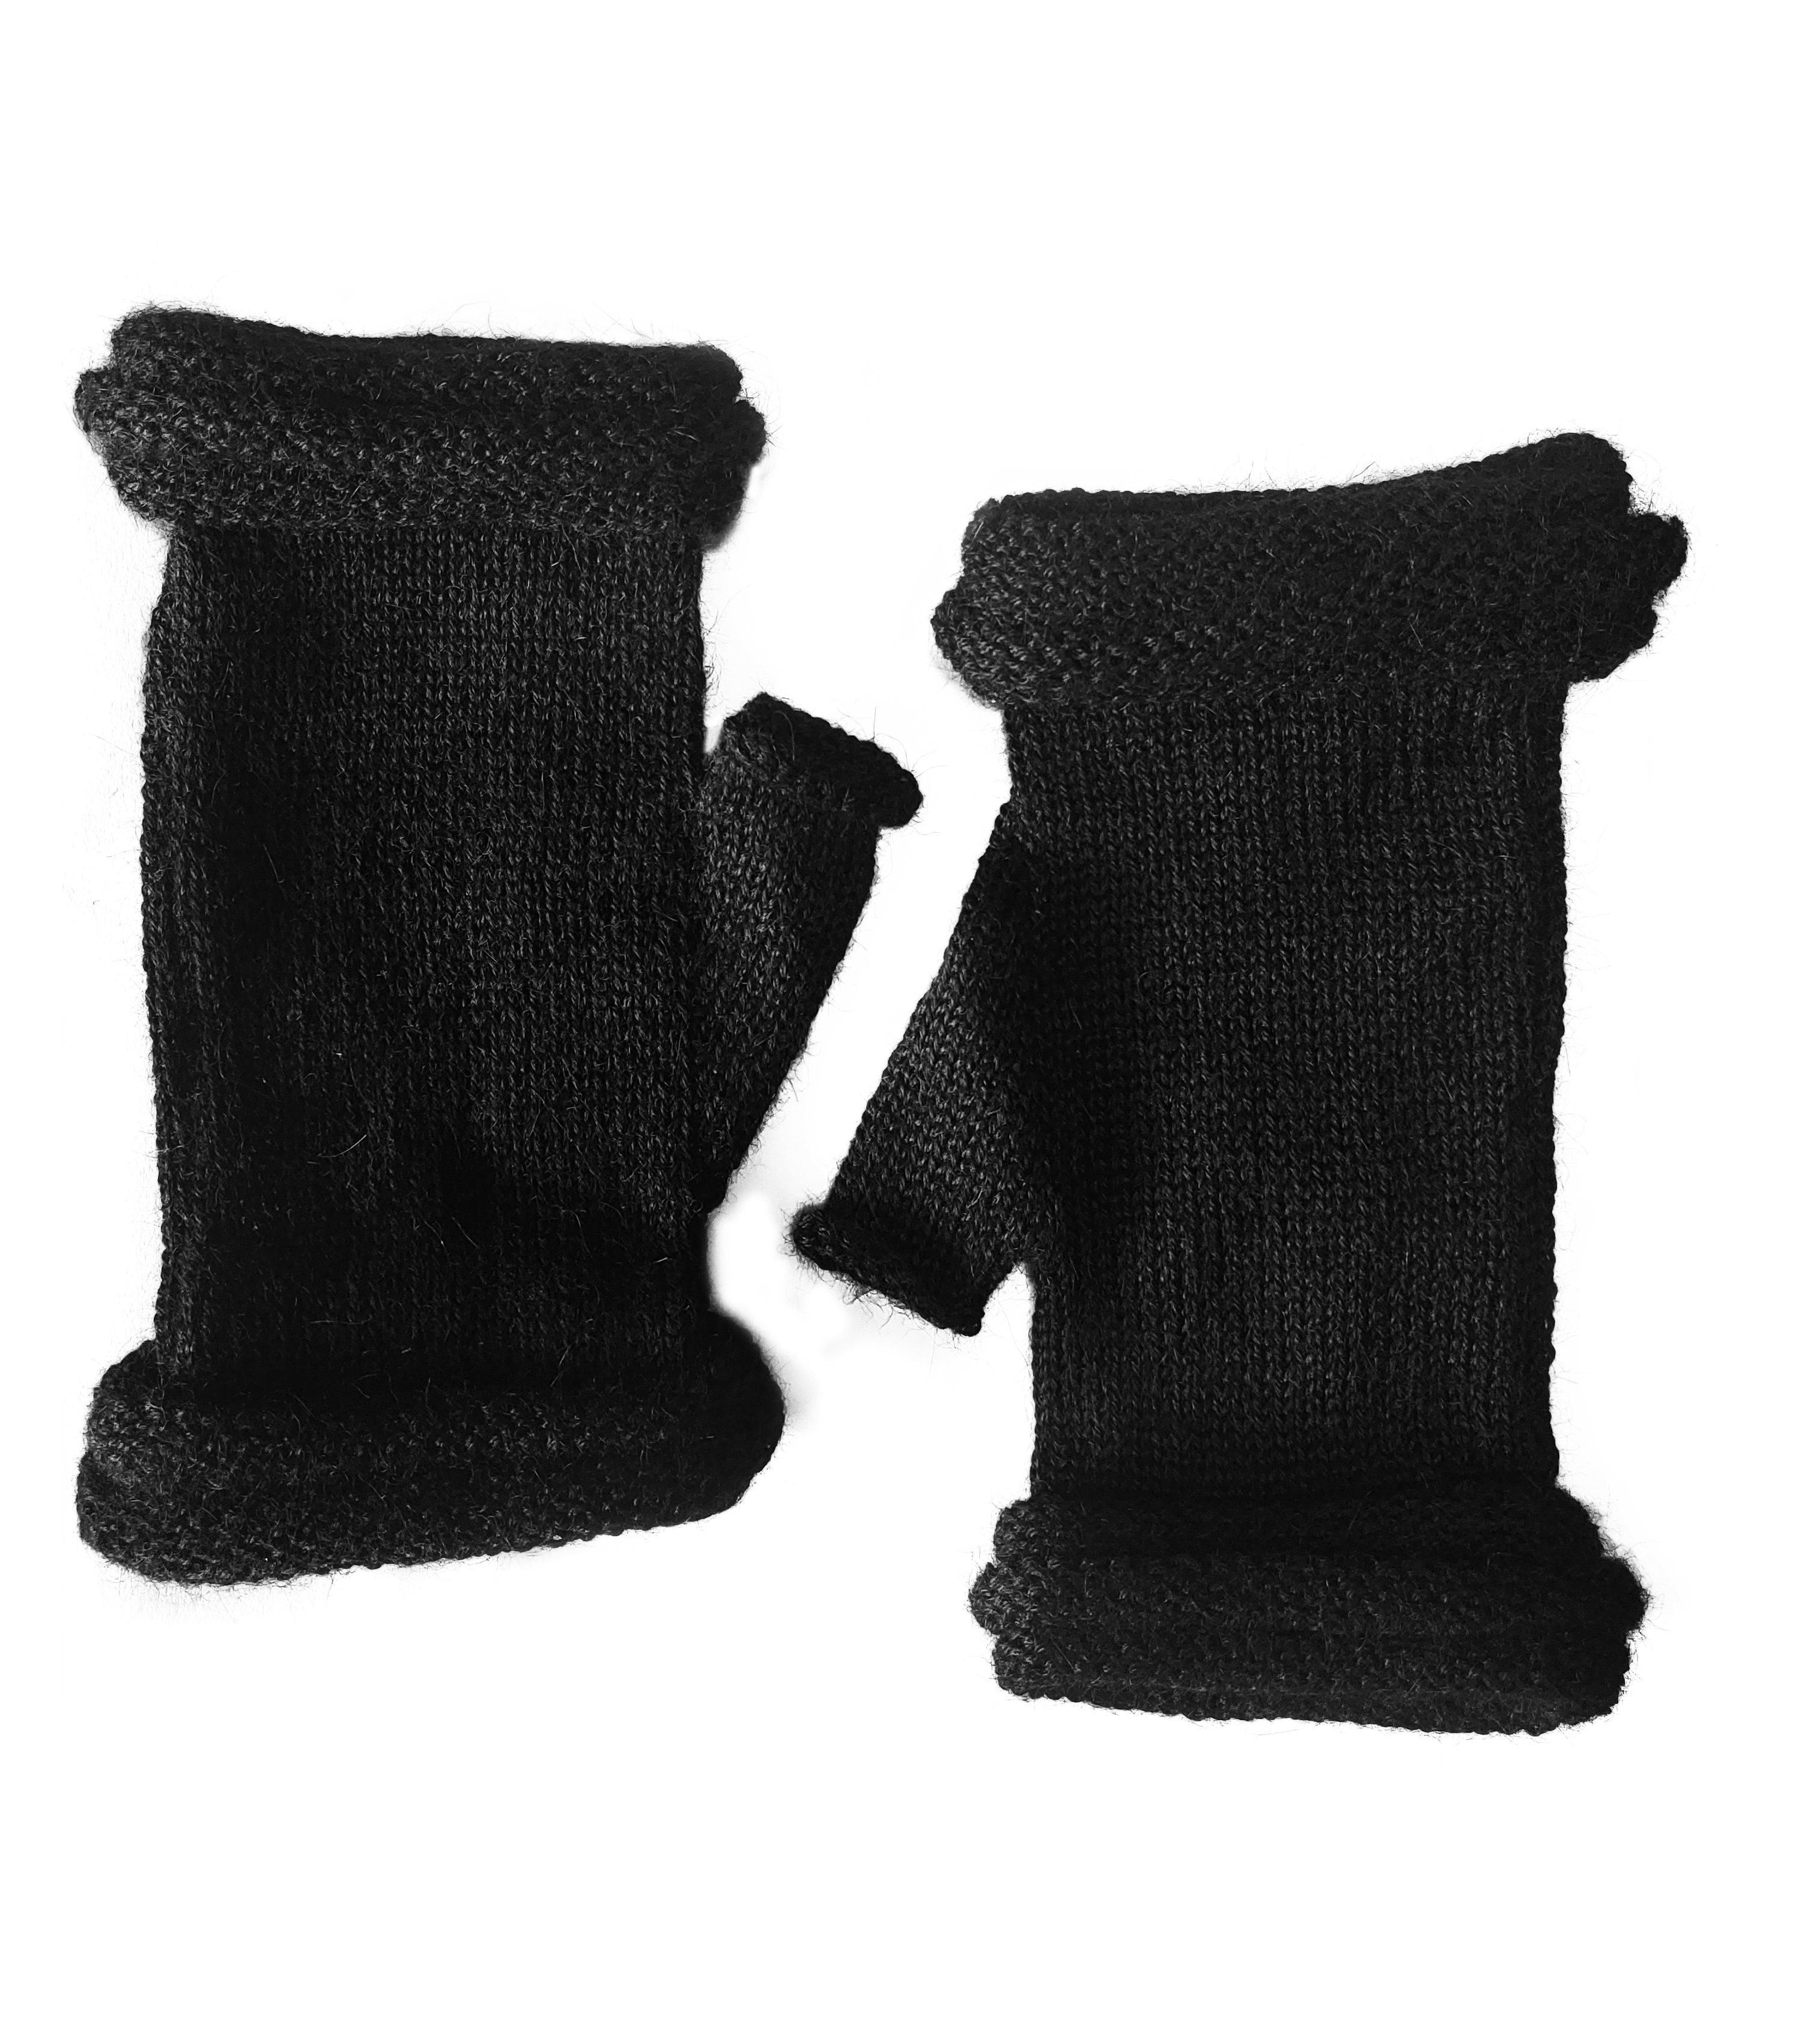 Gear Handschuhe Damen schwarz Posh Herren aus Fäustlinge Storiguanti Alpakawolle Alpaka 100%